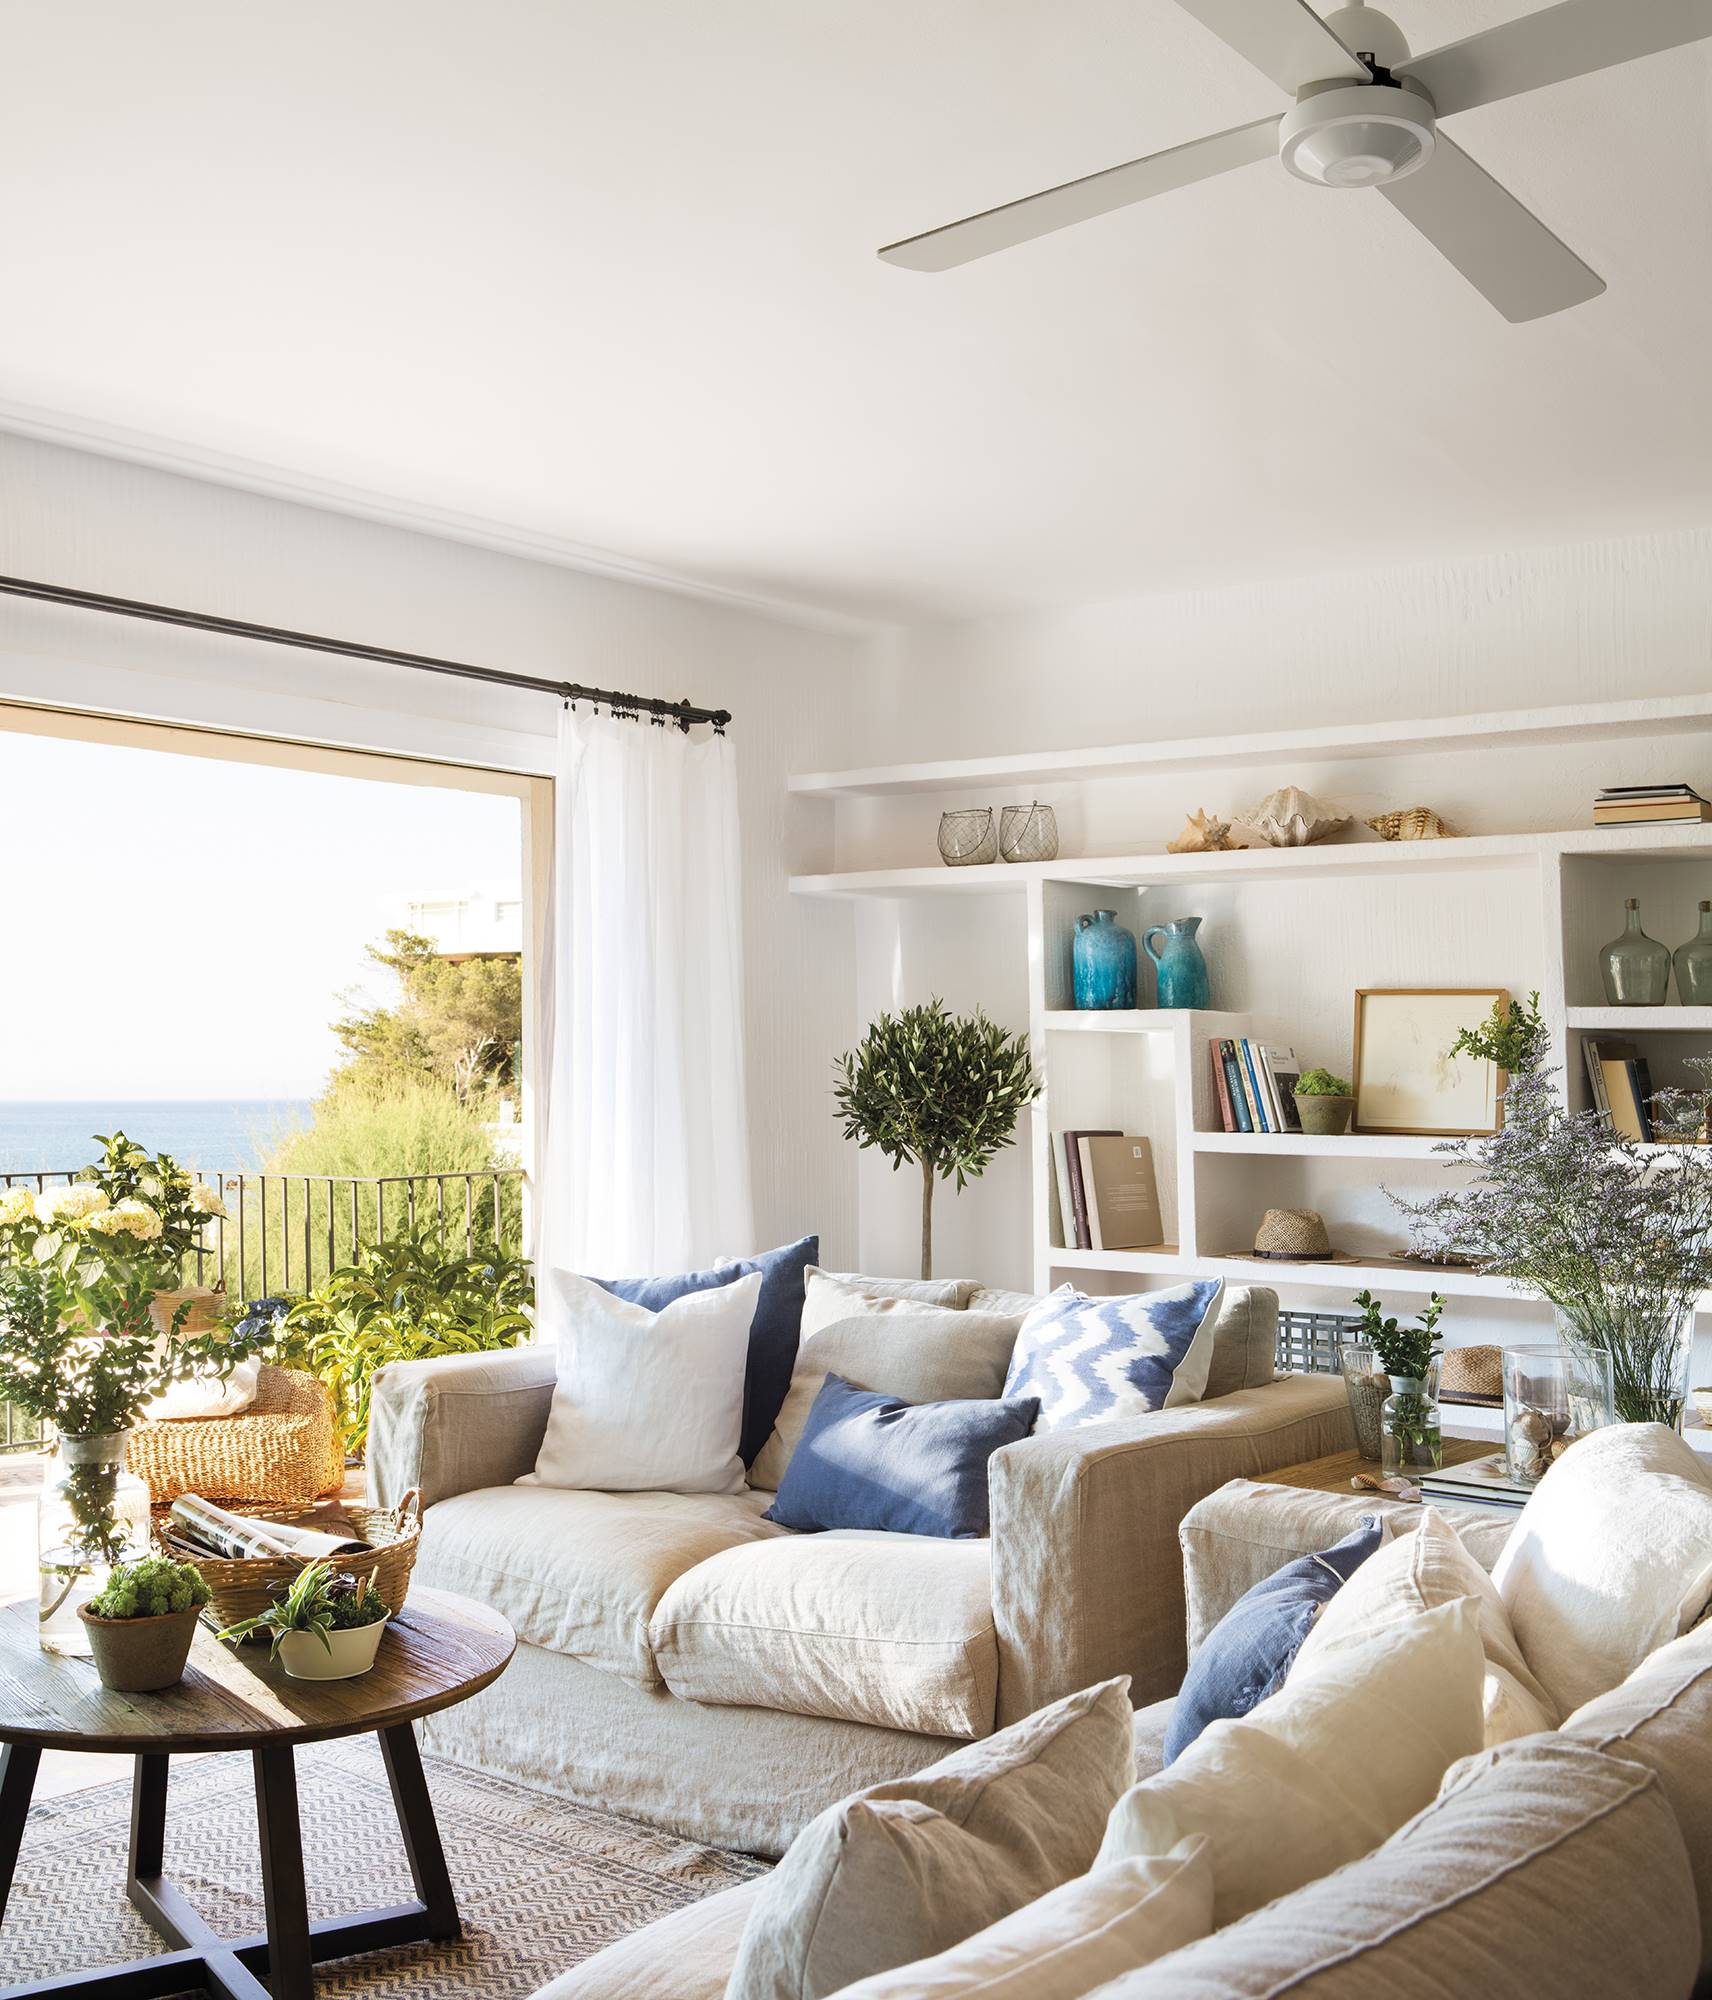 Salón de verano con dos sofás de lino beige decorados con cojines azules -0838-0839 bd0af5d2